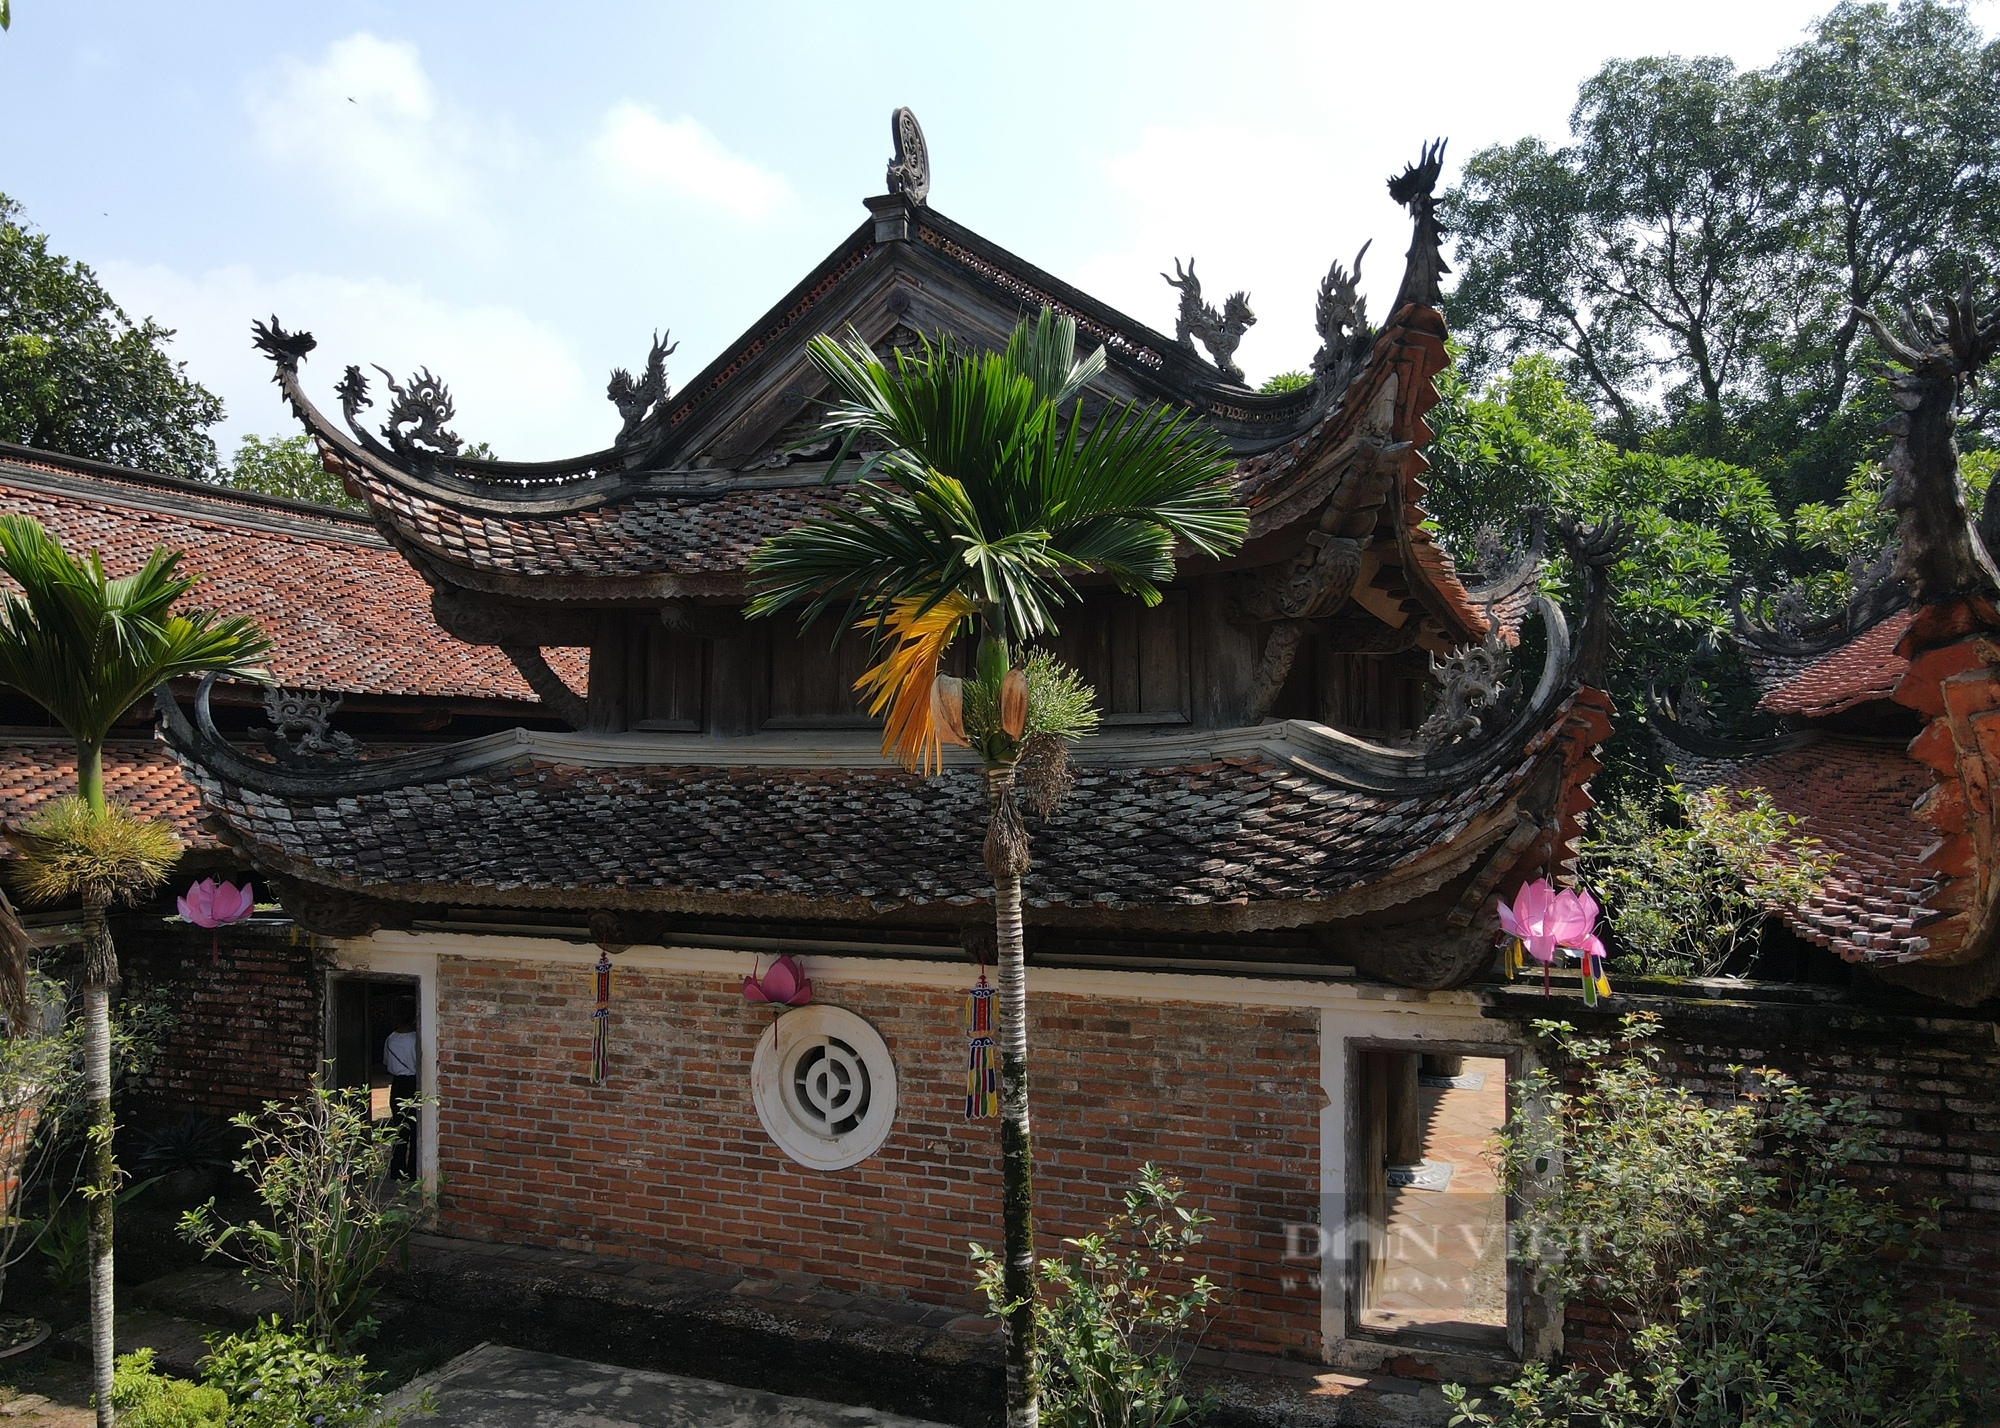 Ngôi chùa cổ gần 4 thế kỷ: Điểm du lịch Di tích Quốc gia đặc biệt ở Hà Nội - Ảnh 4.